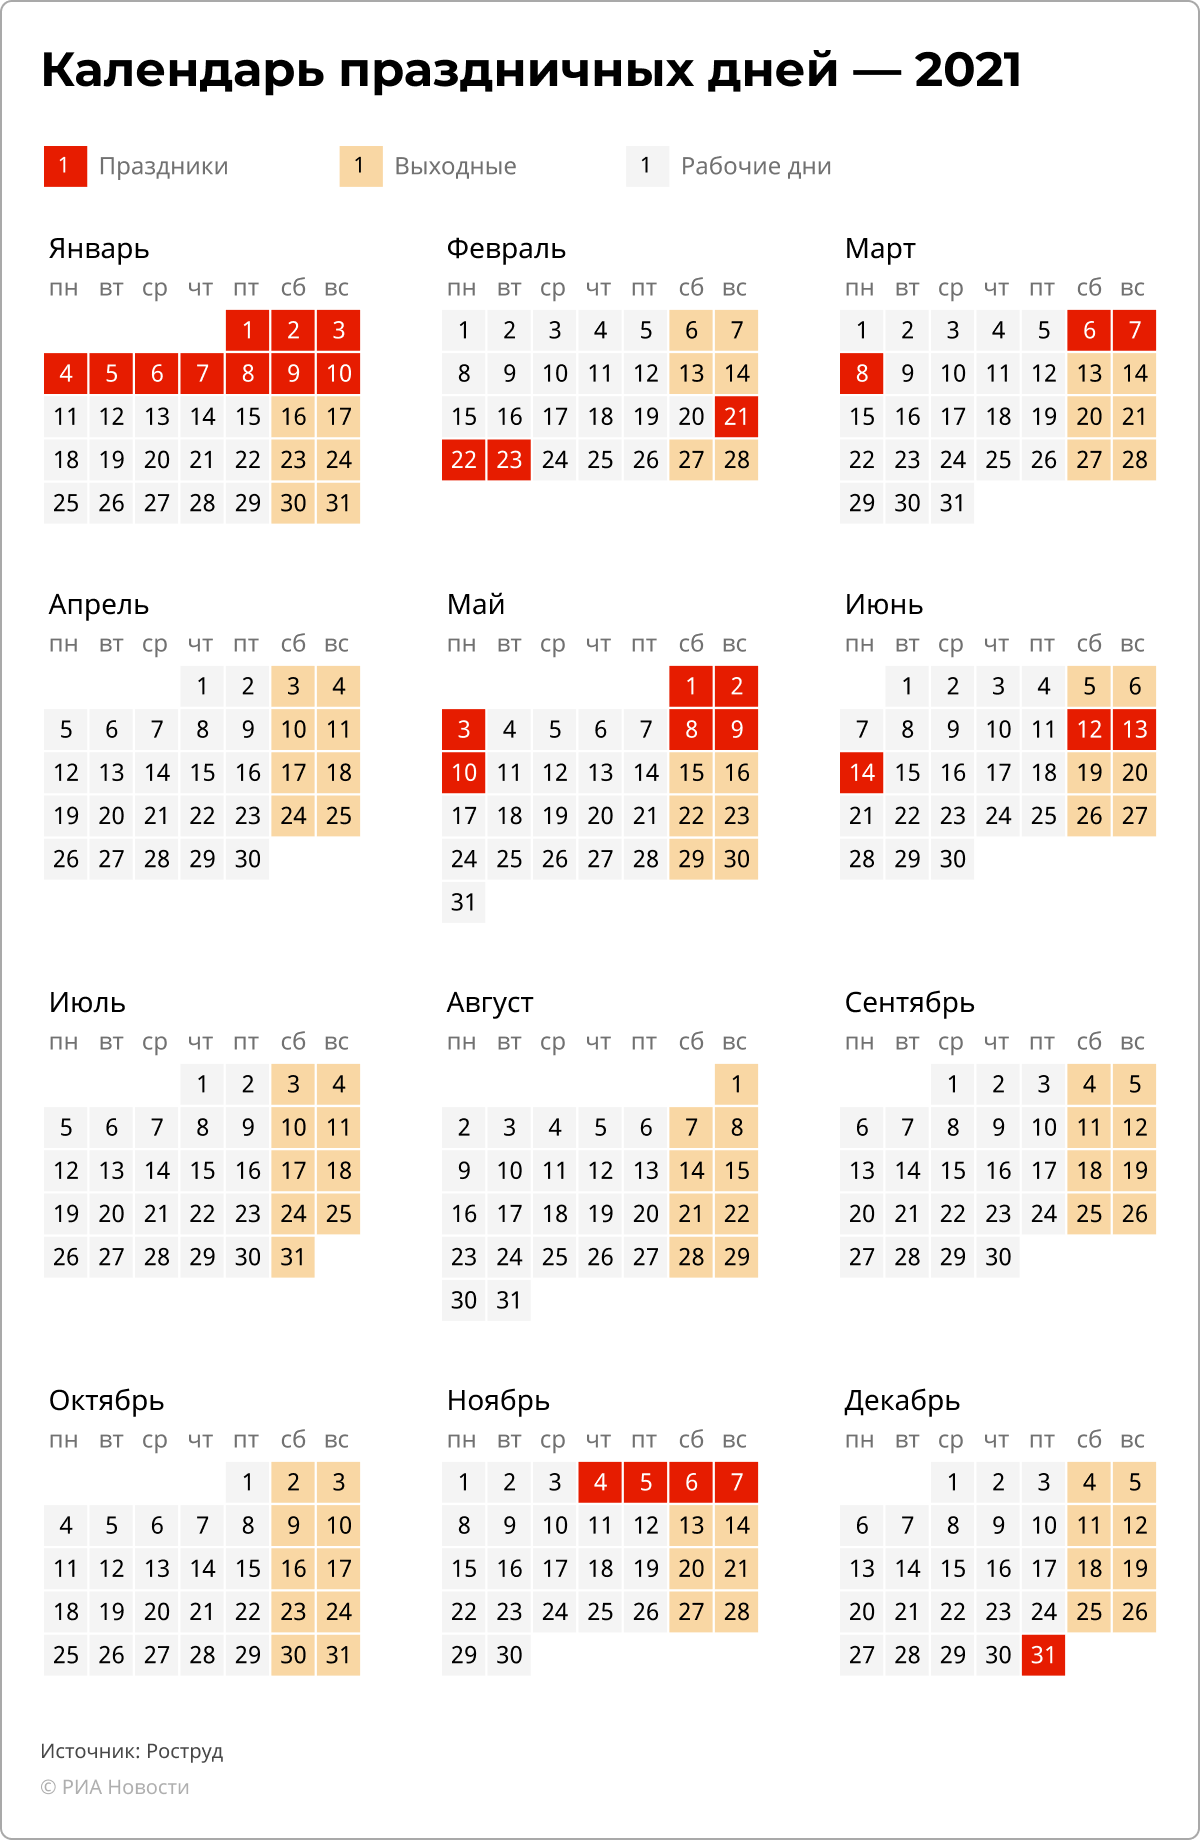 Какие официальные дни в мае. Календарь праздников на 2023 год в России. Календарь праздничных дней на 2023 год. Выходные и праздничные дни в 2023 в 2023 году. Календарь выходных и праздничных дней на 2023 год в России.